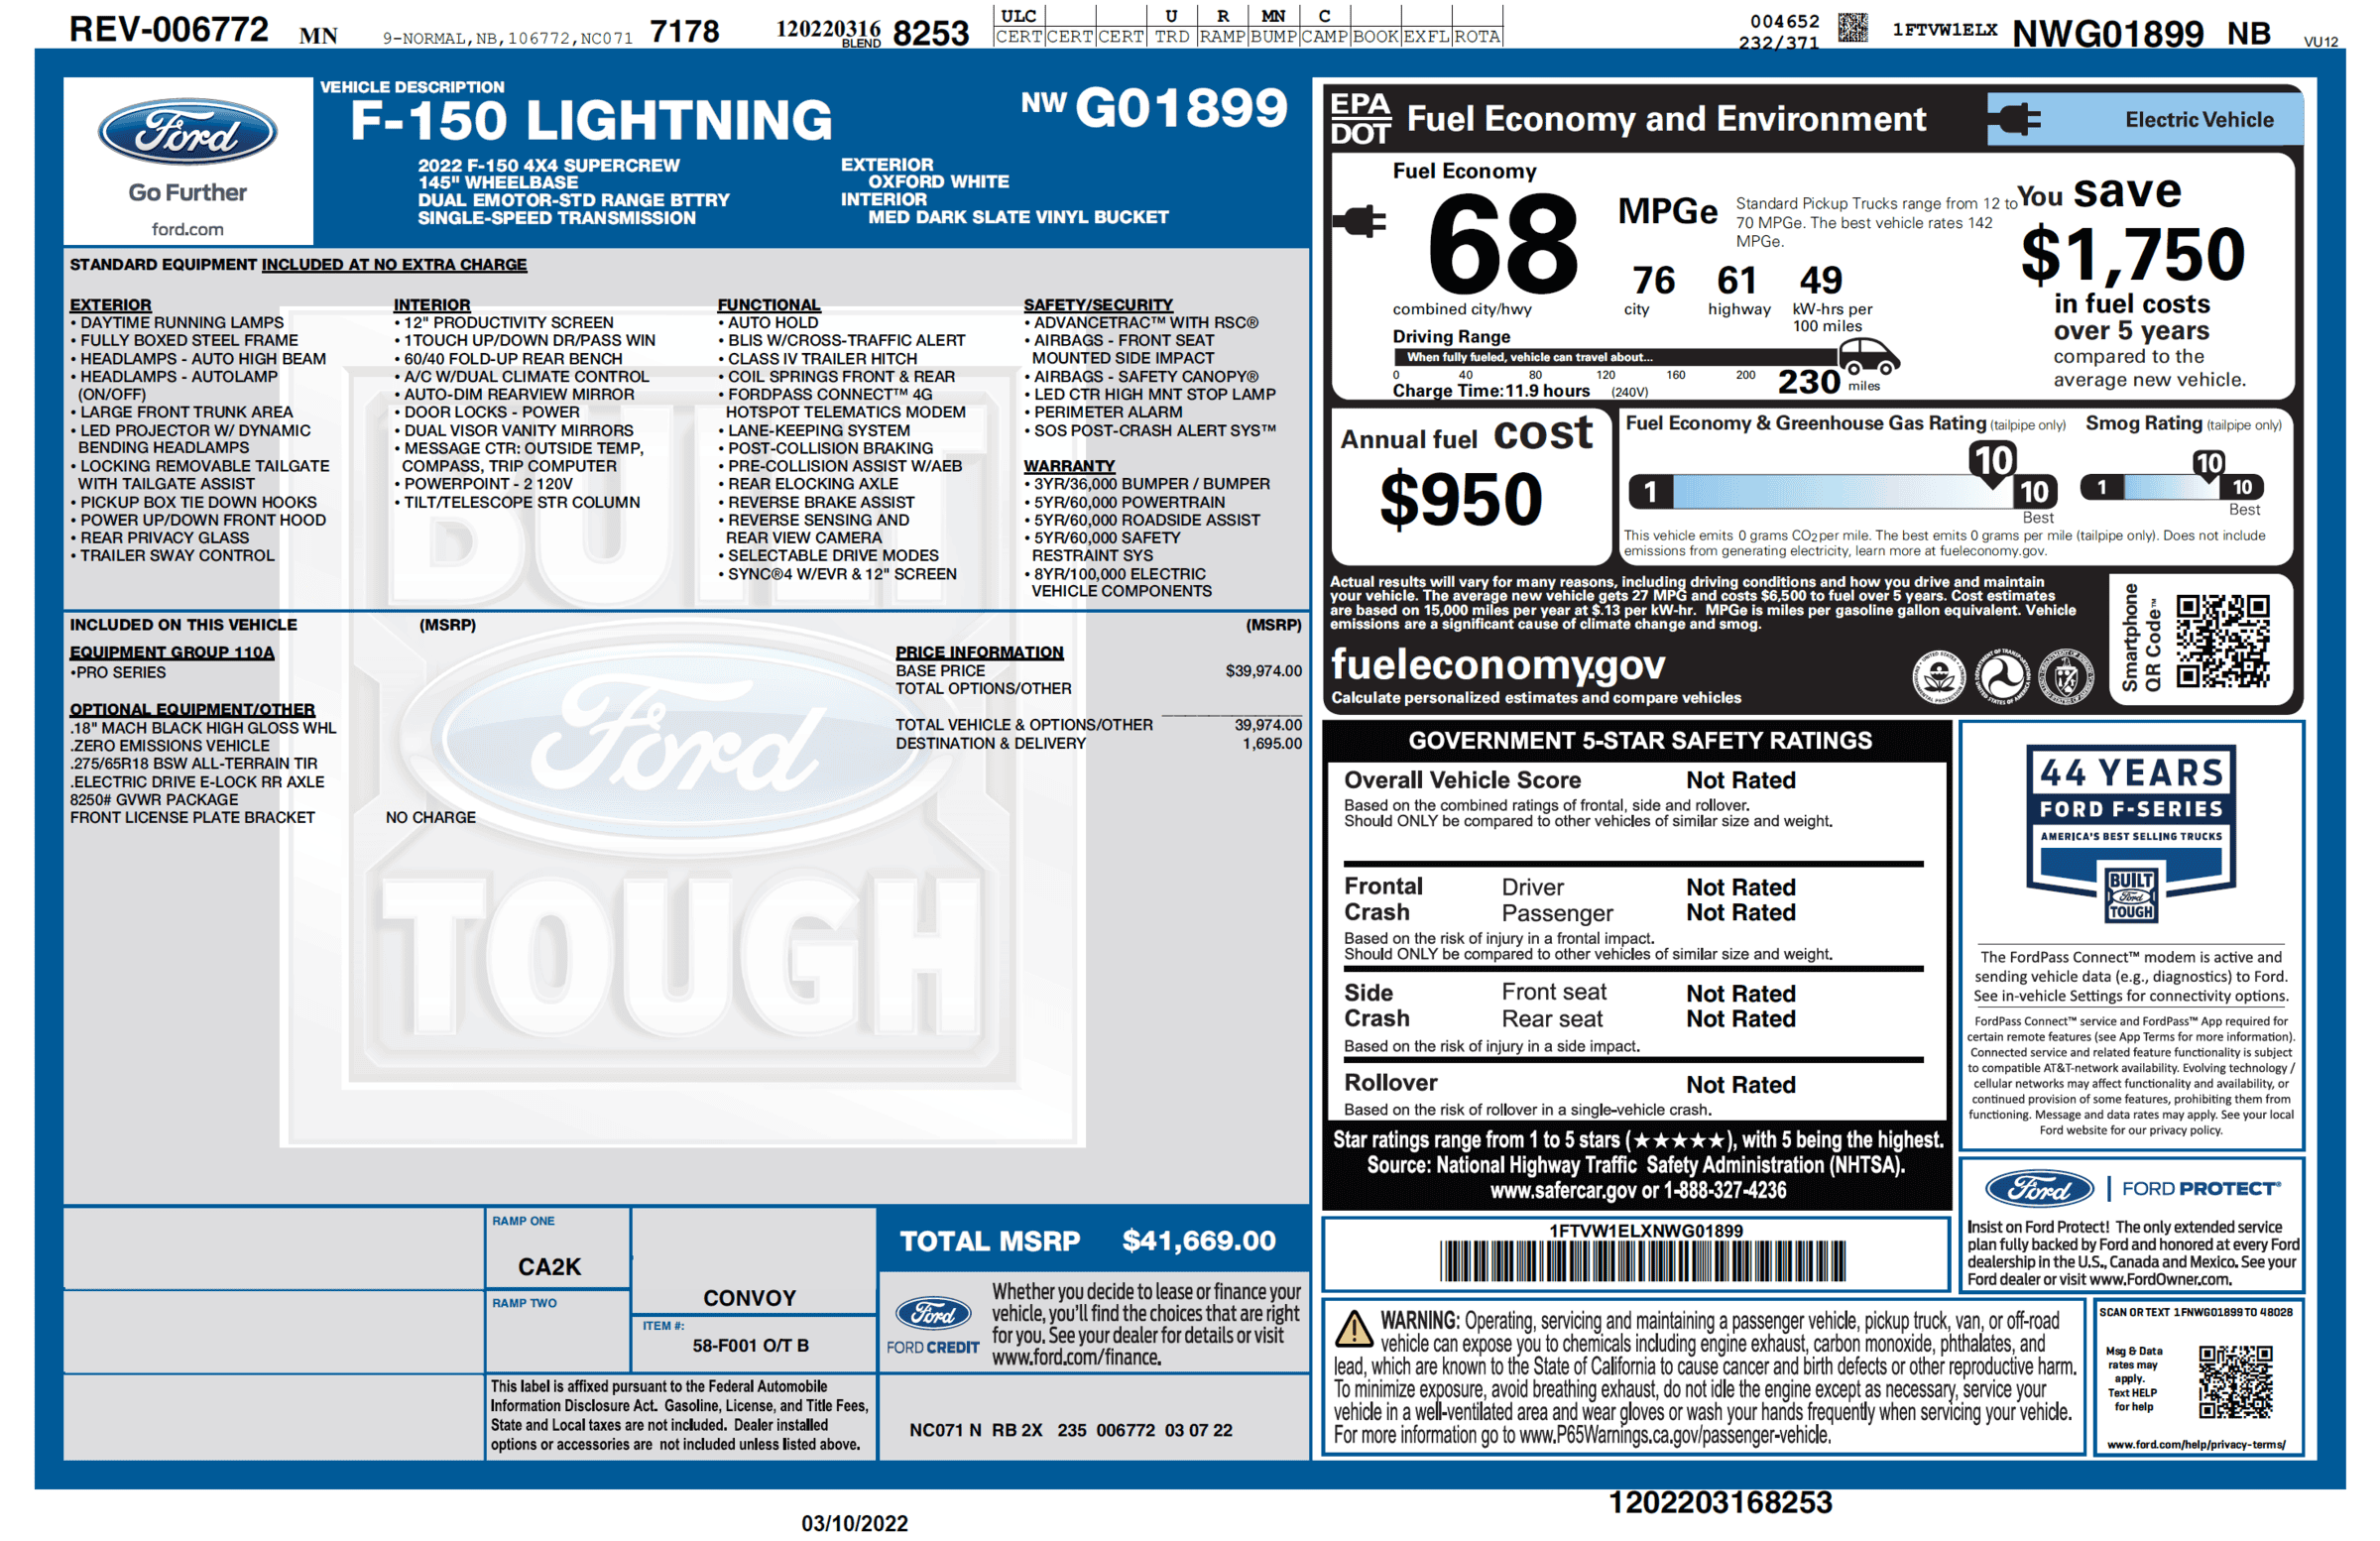 Ford F-150 Lightning F-150 Lightning Official EPA Range MPGe Revealed in Window Sticker (Base + Extended Range)! 1647536408566-